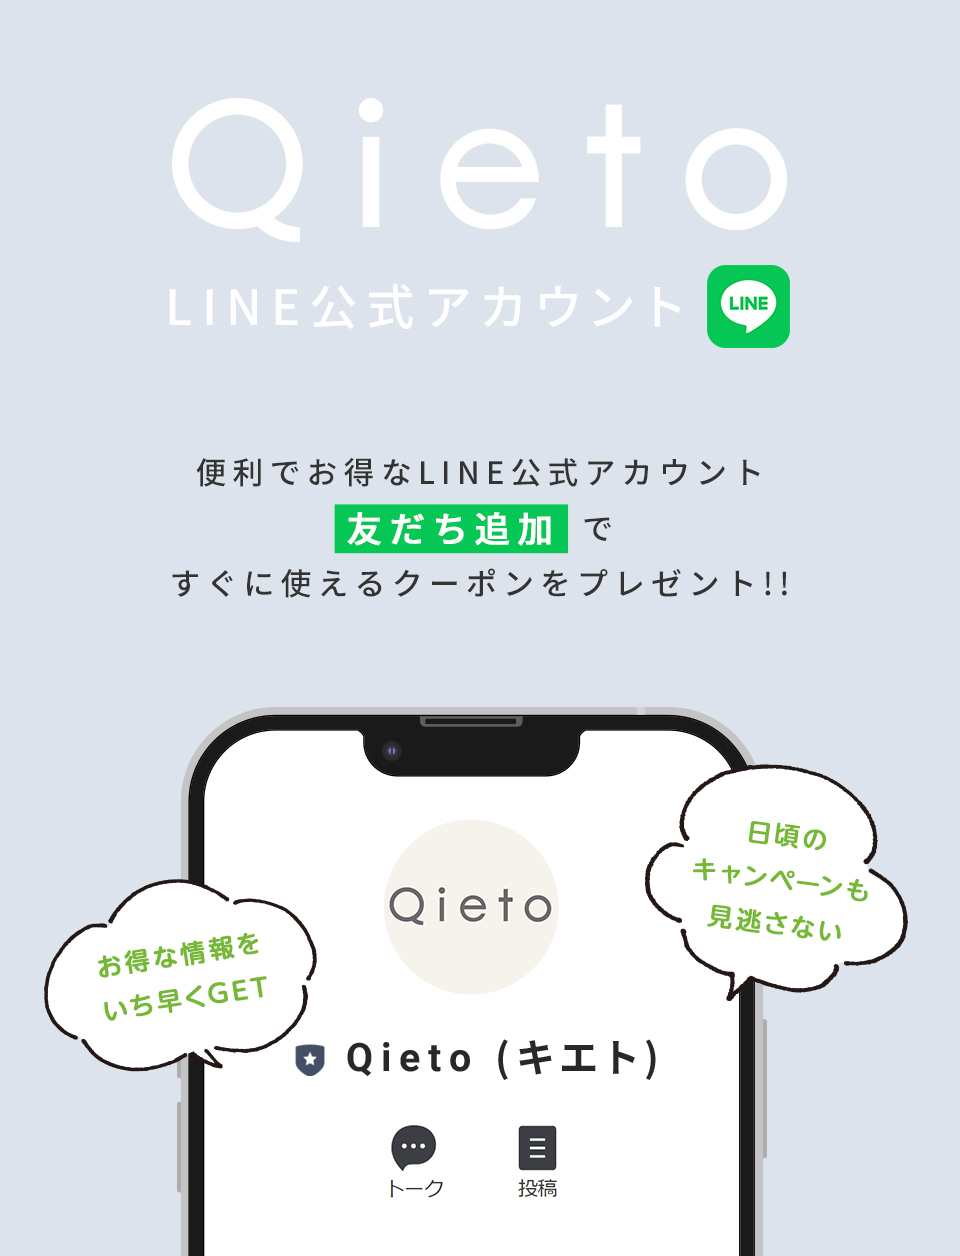 Qieto LINE公式アカウント